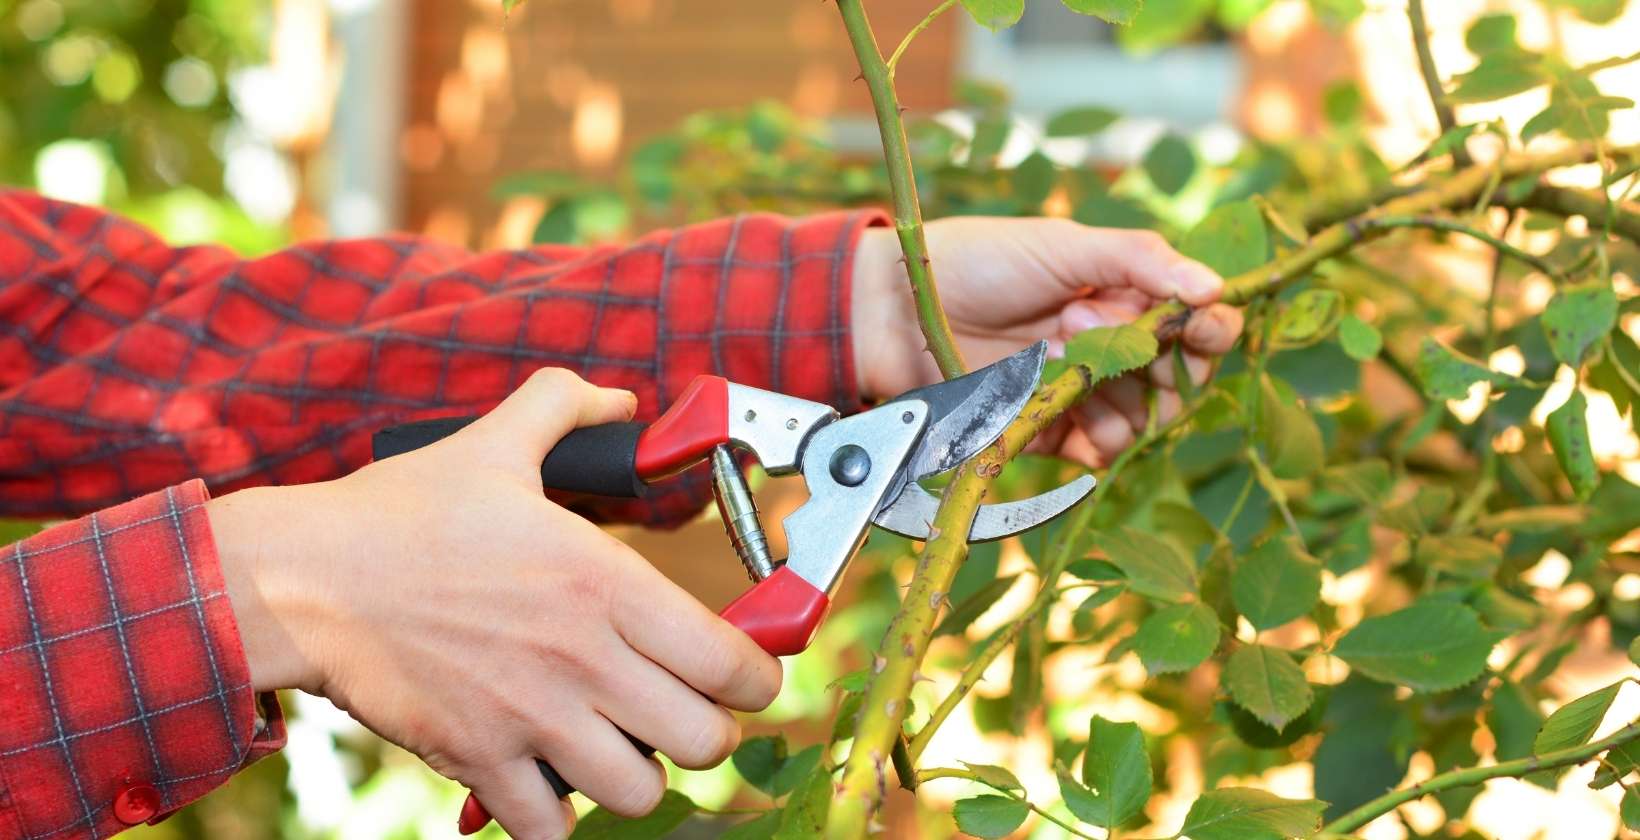 El arte de podar: cómo transformar tu jardín con las herramientas correctas